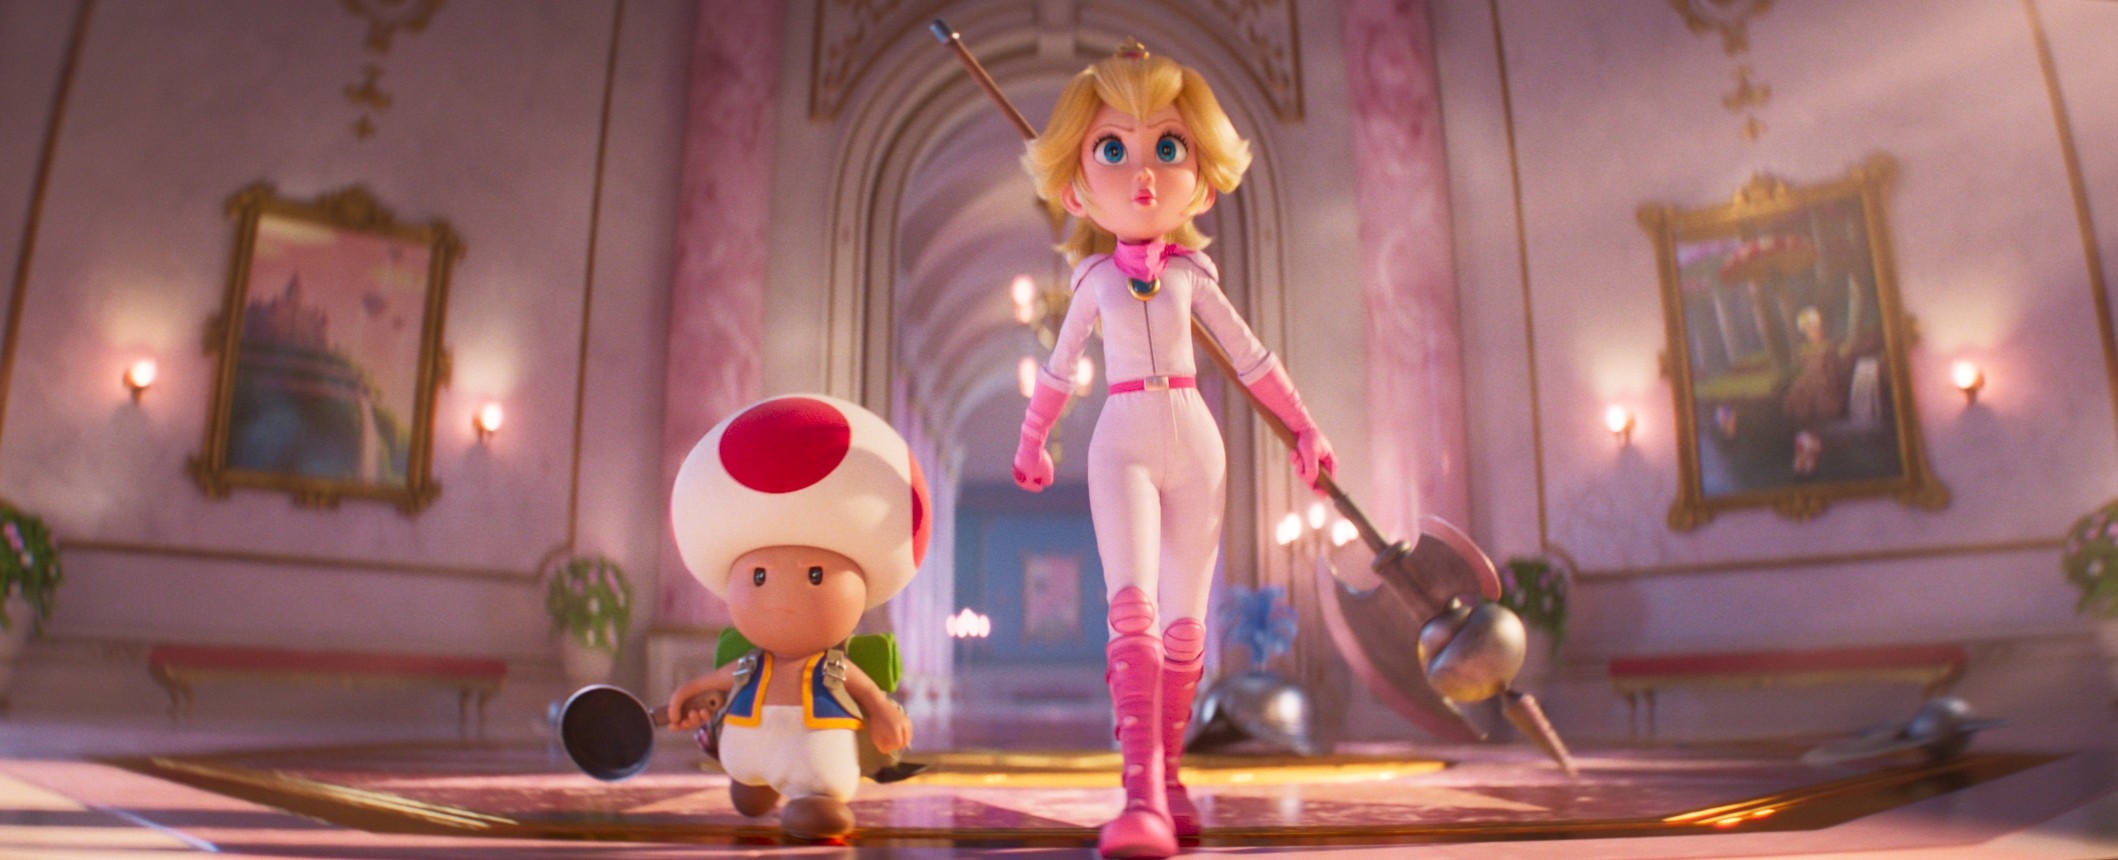 ‘Super Mario Bros. Movie' review: A fun but safe Mushroom Kingdom romp | DeviceDaily.com